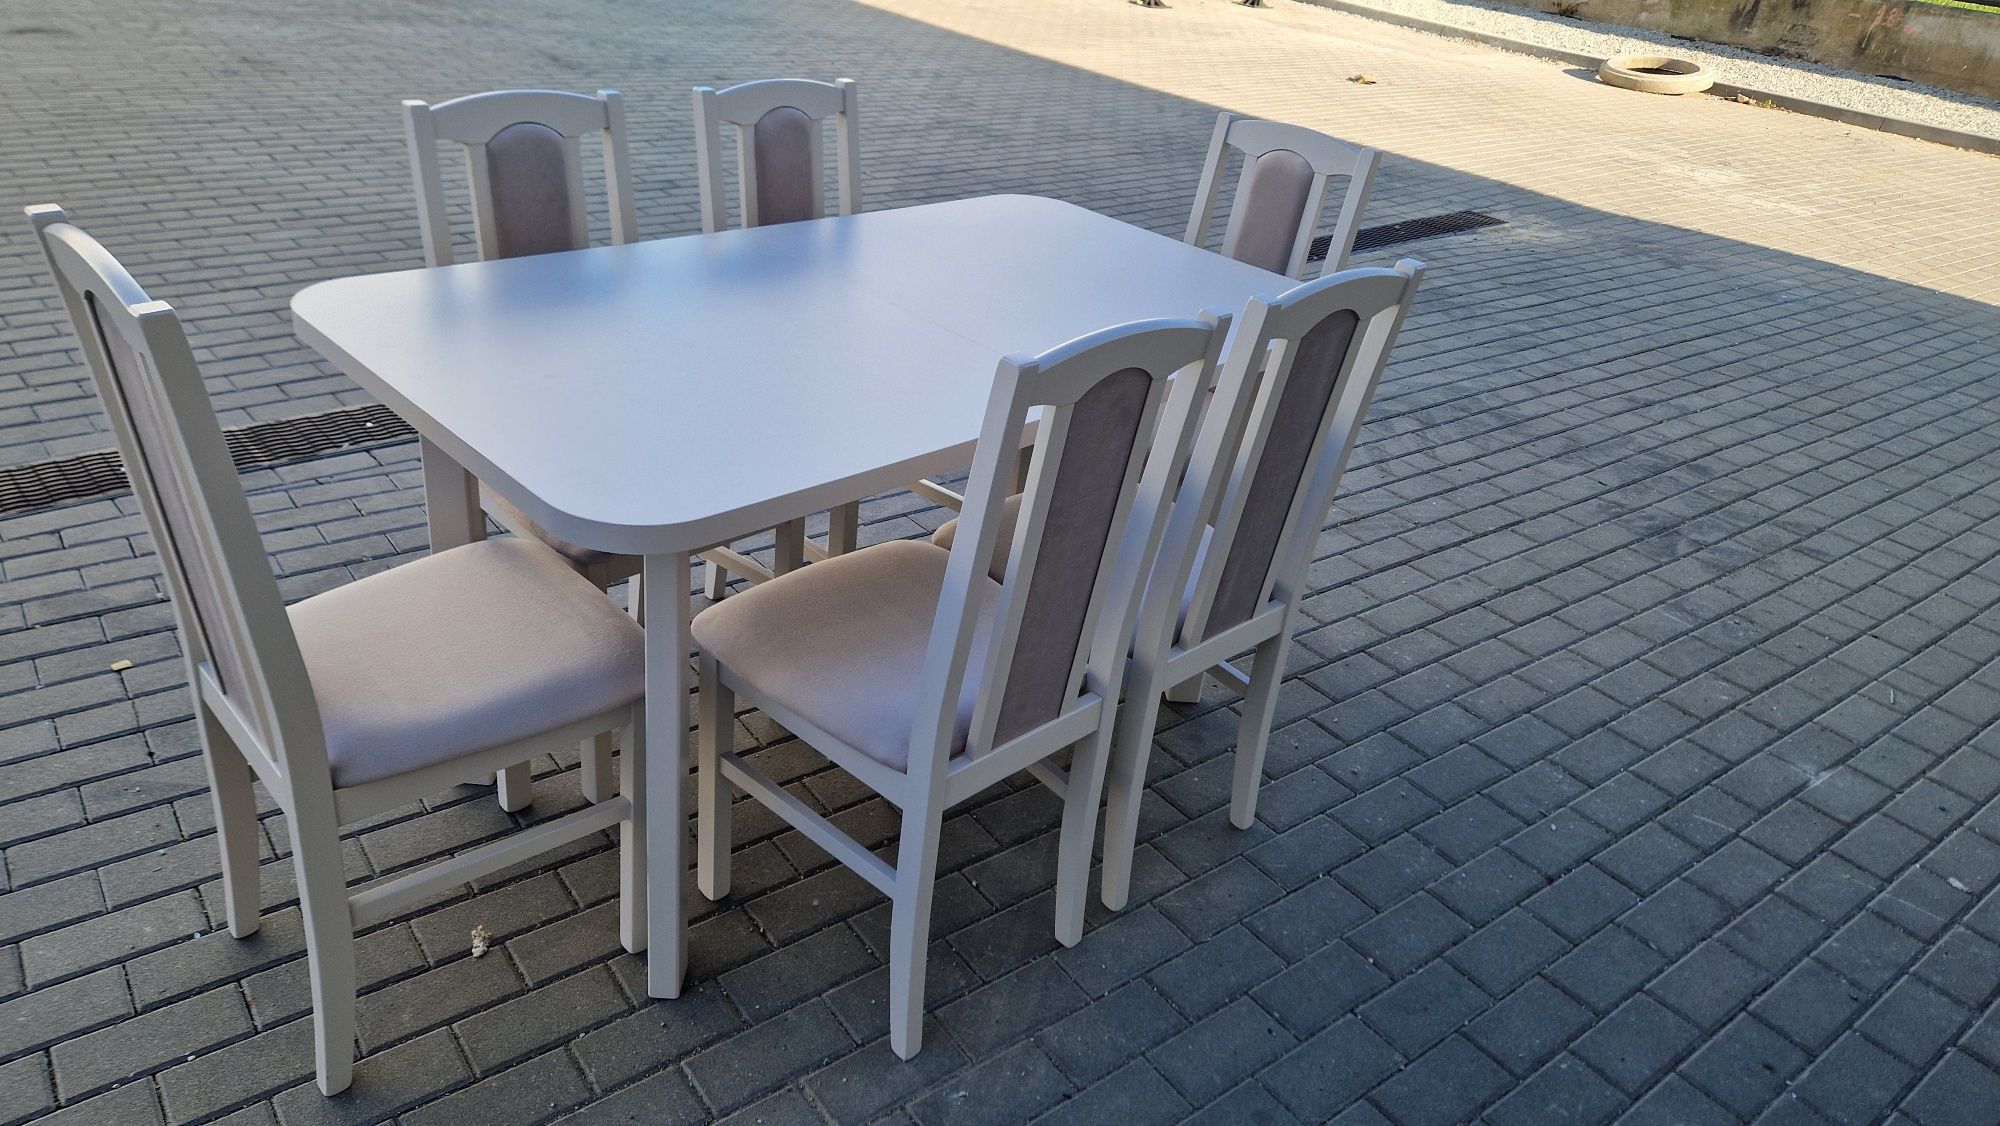 Nowe: Stół 80x140/180 + 6 krzeseł, KASZMIR+LATTE, dostawa cała POLSKA